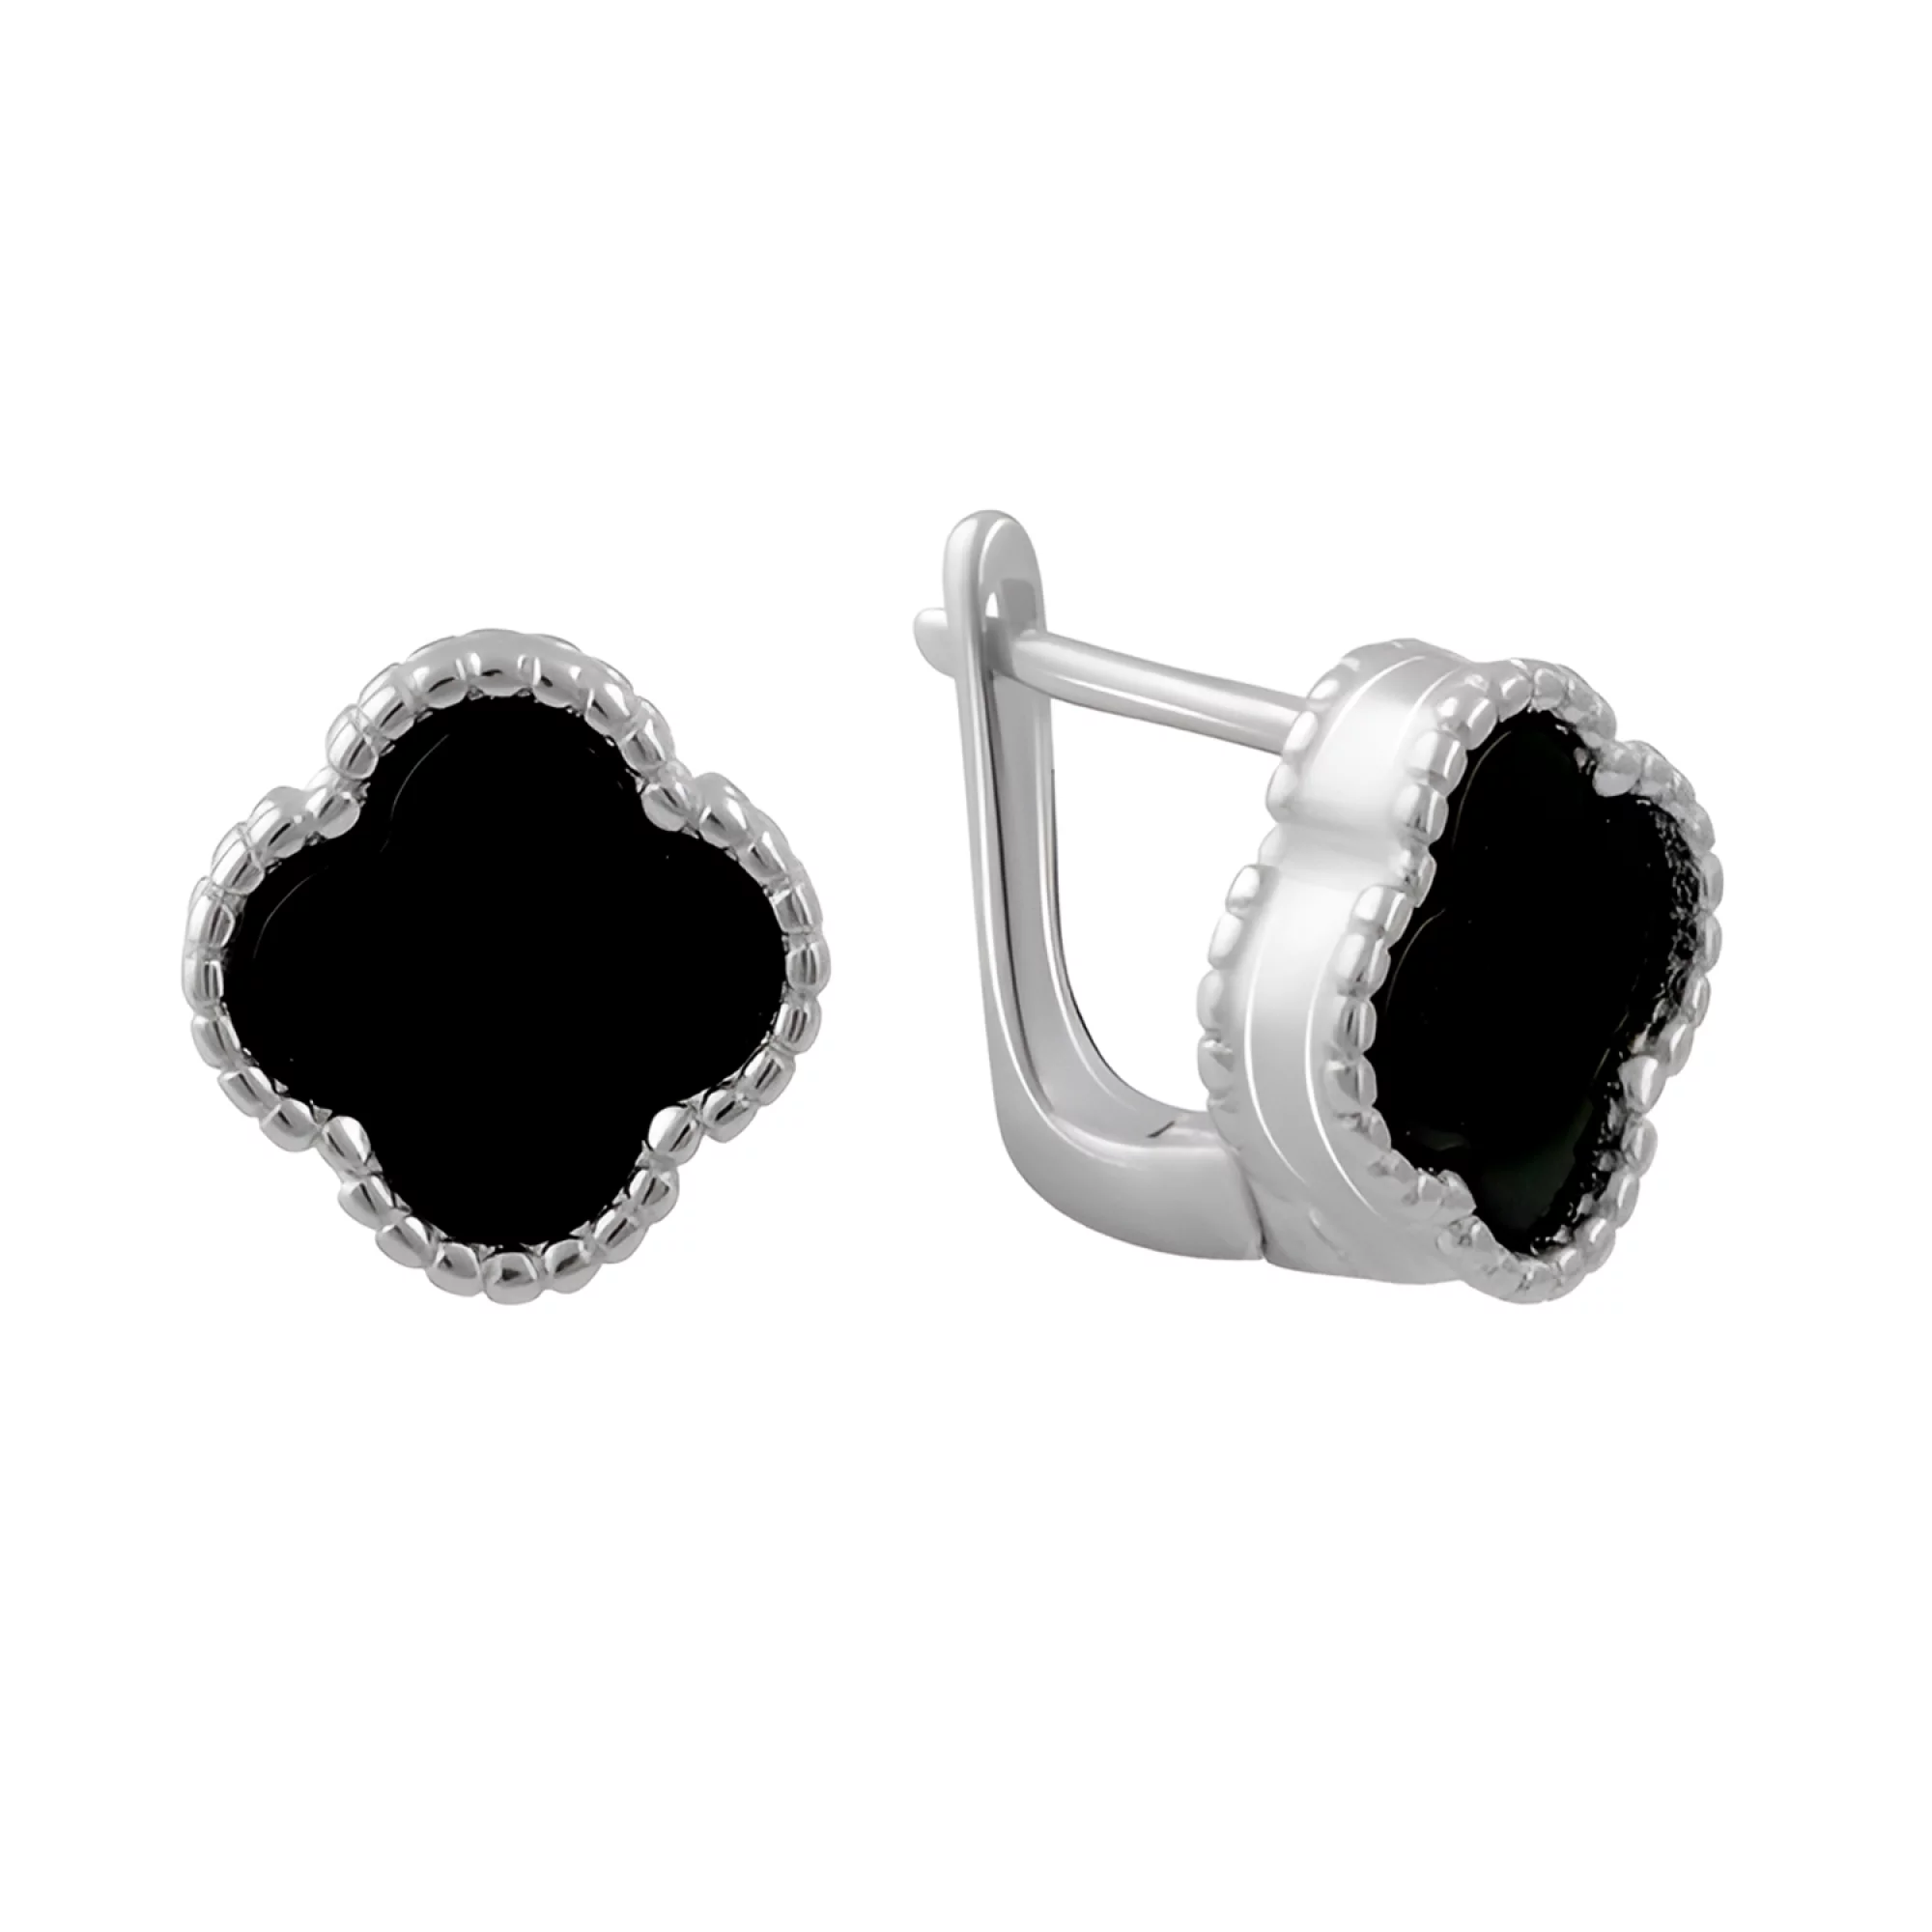 Срібні сережки "Конюшина" з оніксом - 1543306 – зображення 1